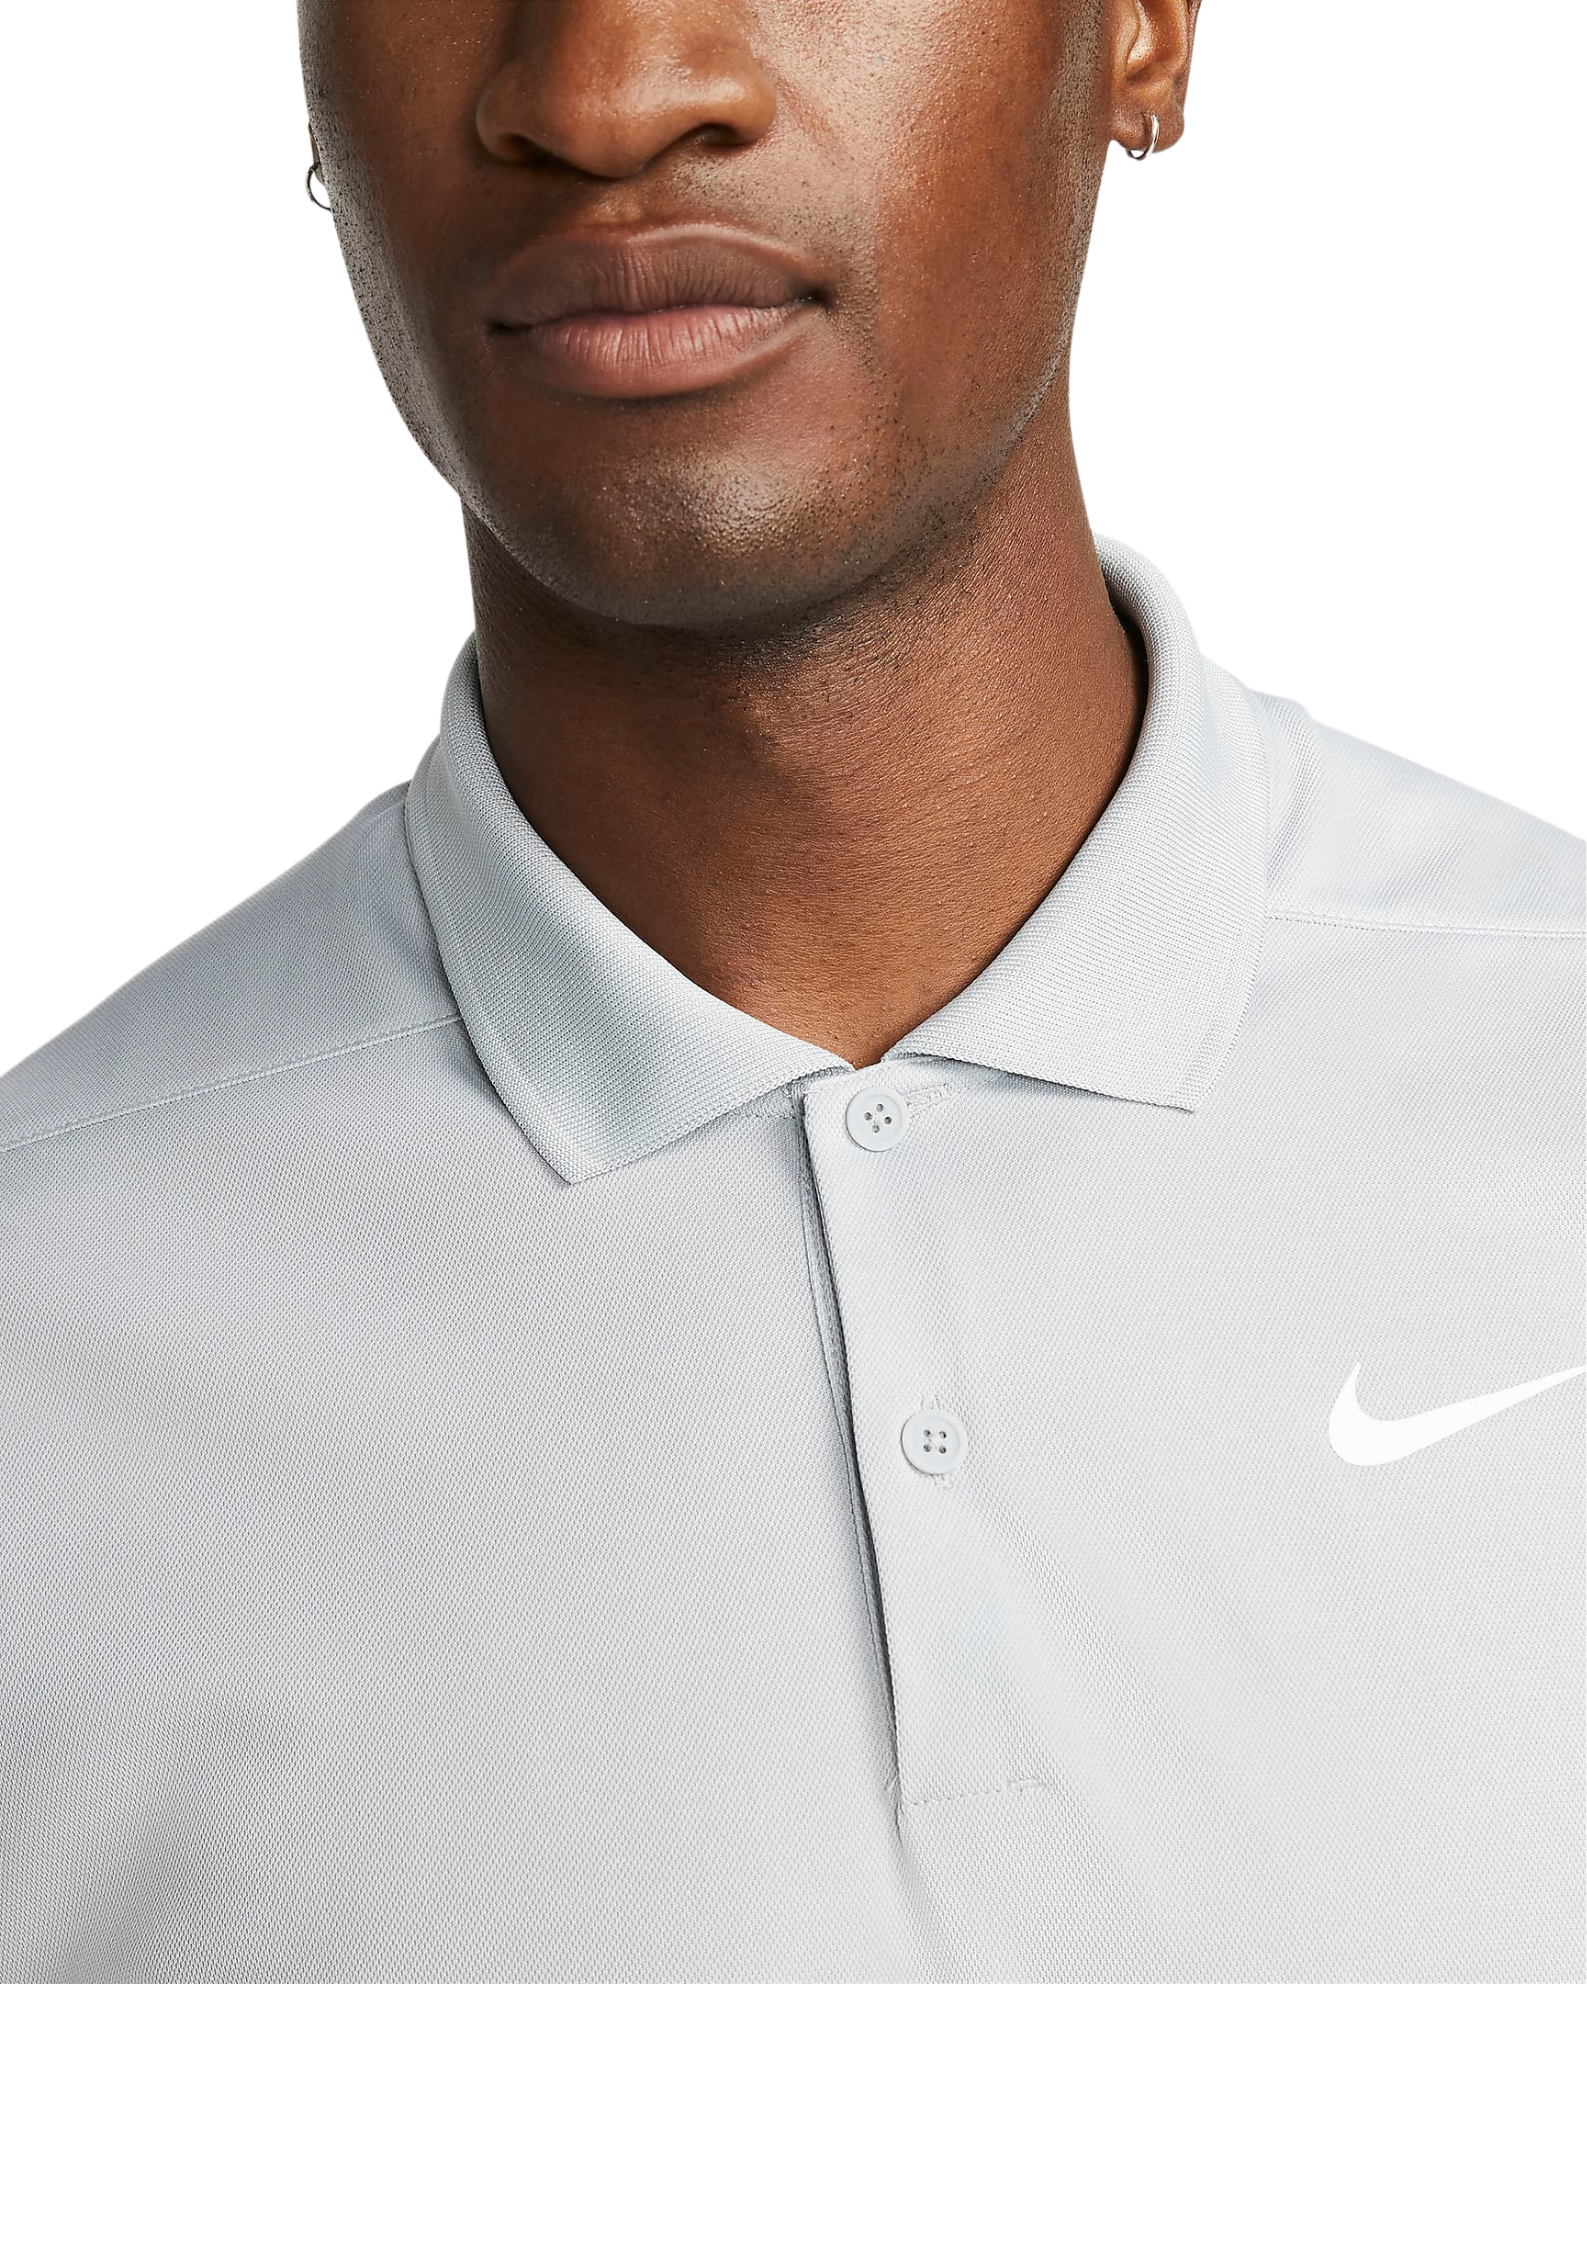 Nike | DH0822-077 | Dri-FIT Victory Men's Golf Polo | Smoke Grey / White